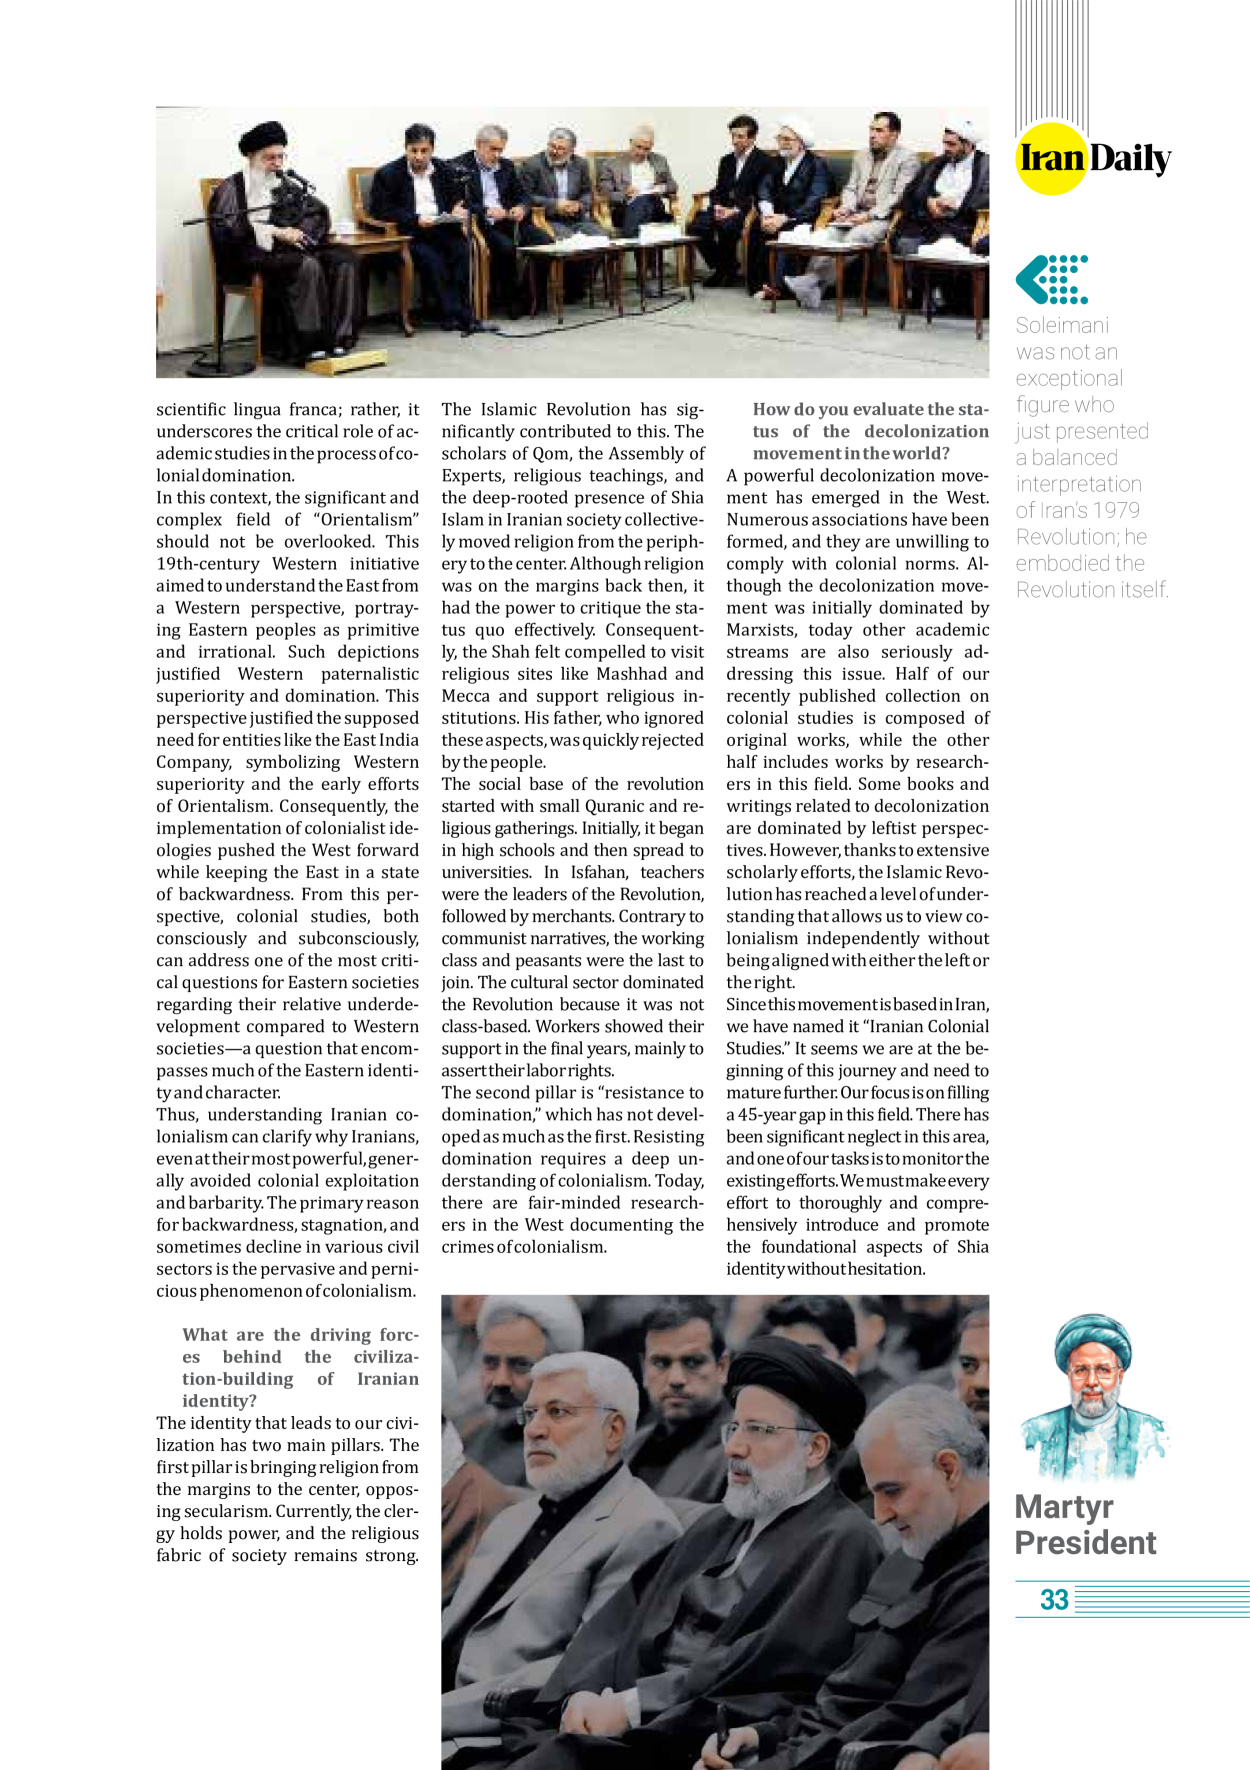 روزنامه ایران - ویژه نامه وِزه نامه چهلم شهید رییسی( انگلیسی) - ۱۷ تیر ۱۴۰۳ - صفحه ۳۳